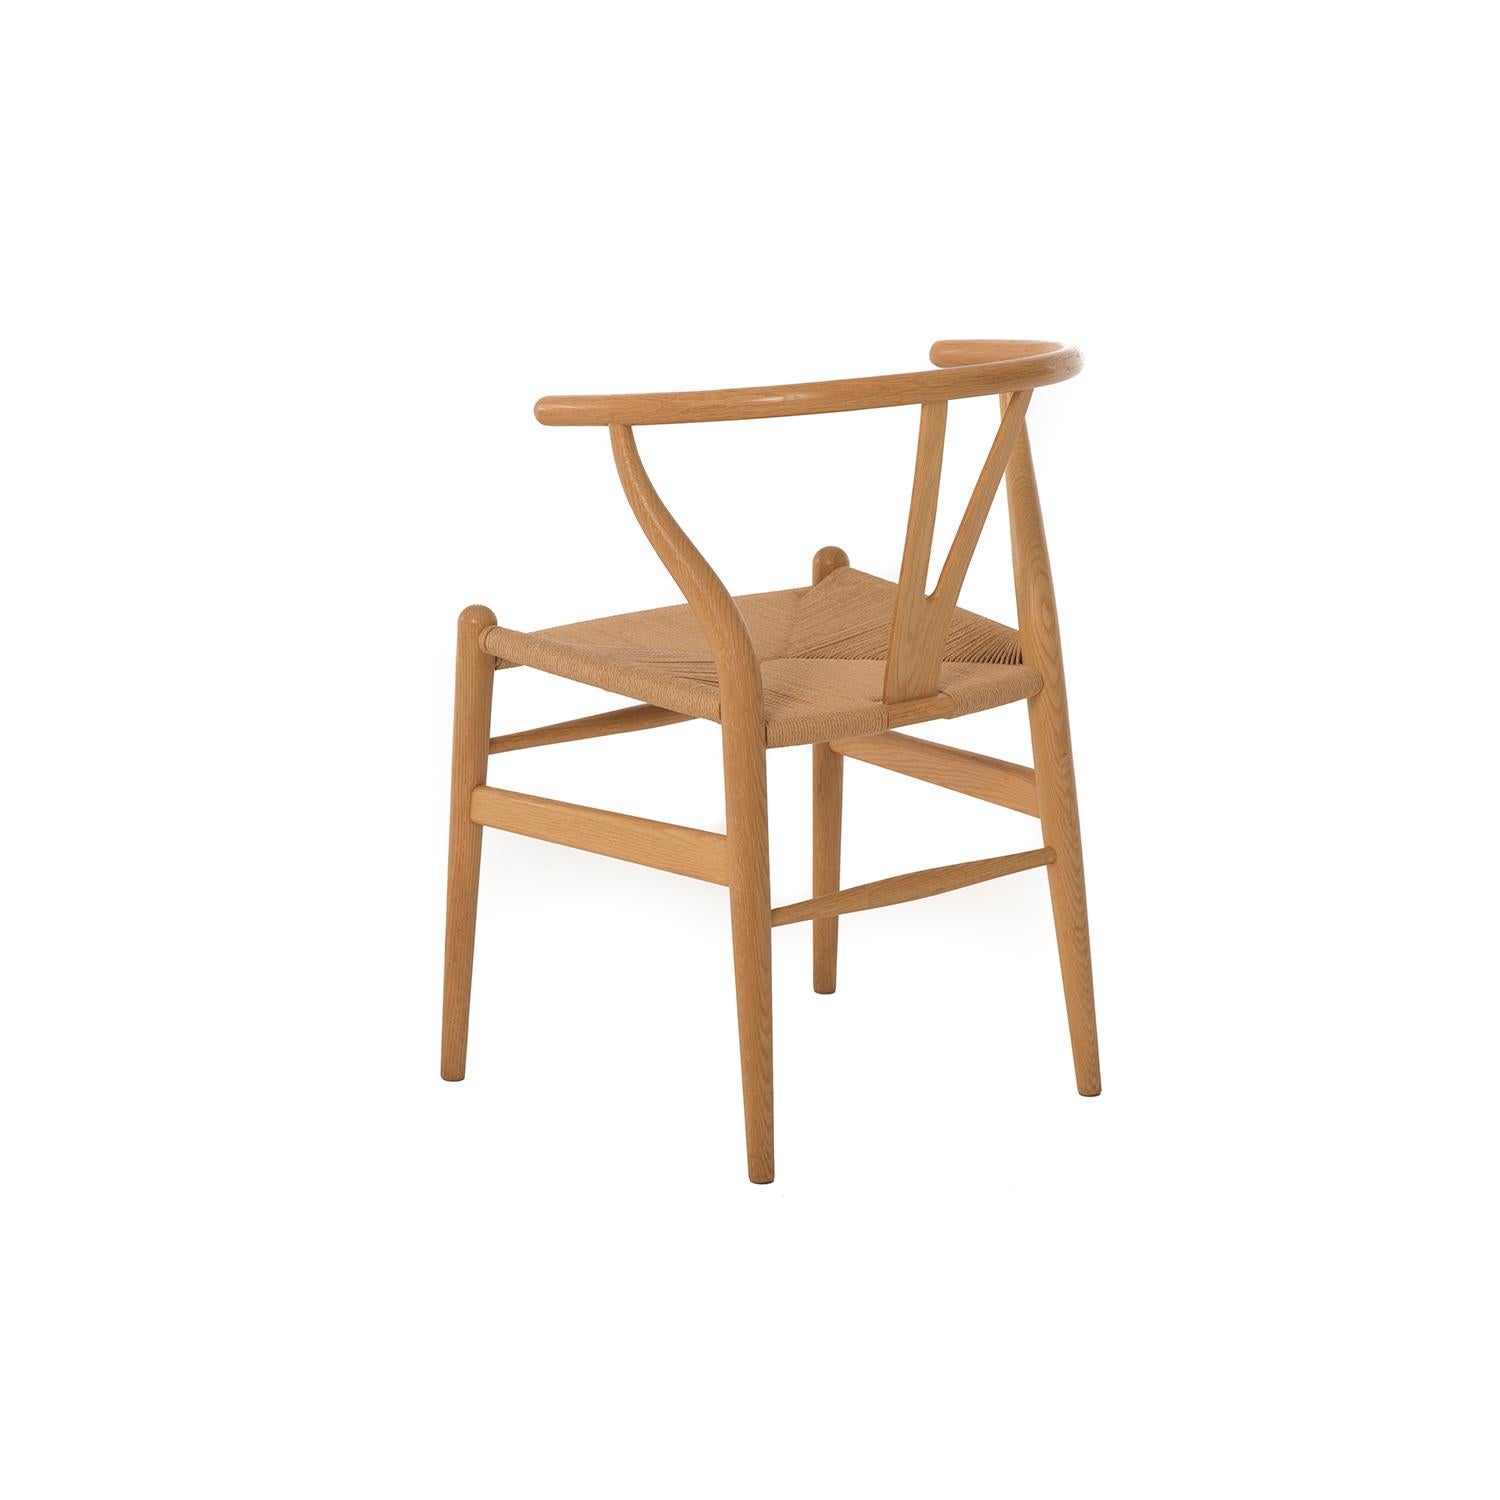 20th Century Danish Modern White Oak Wishbone Dining Chairs